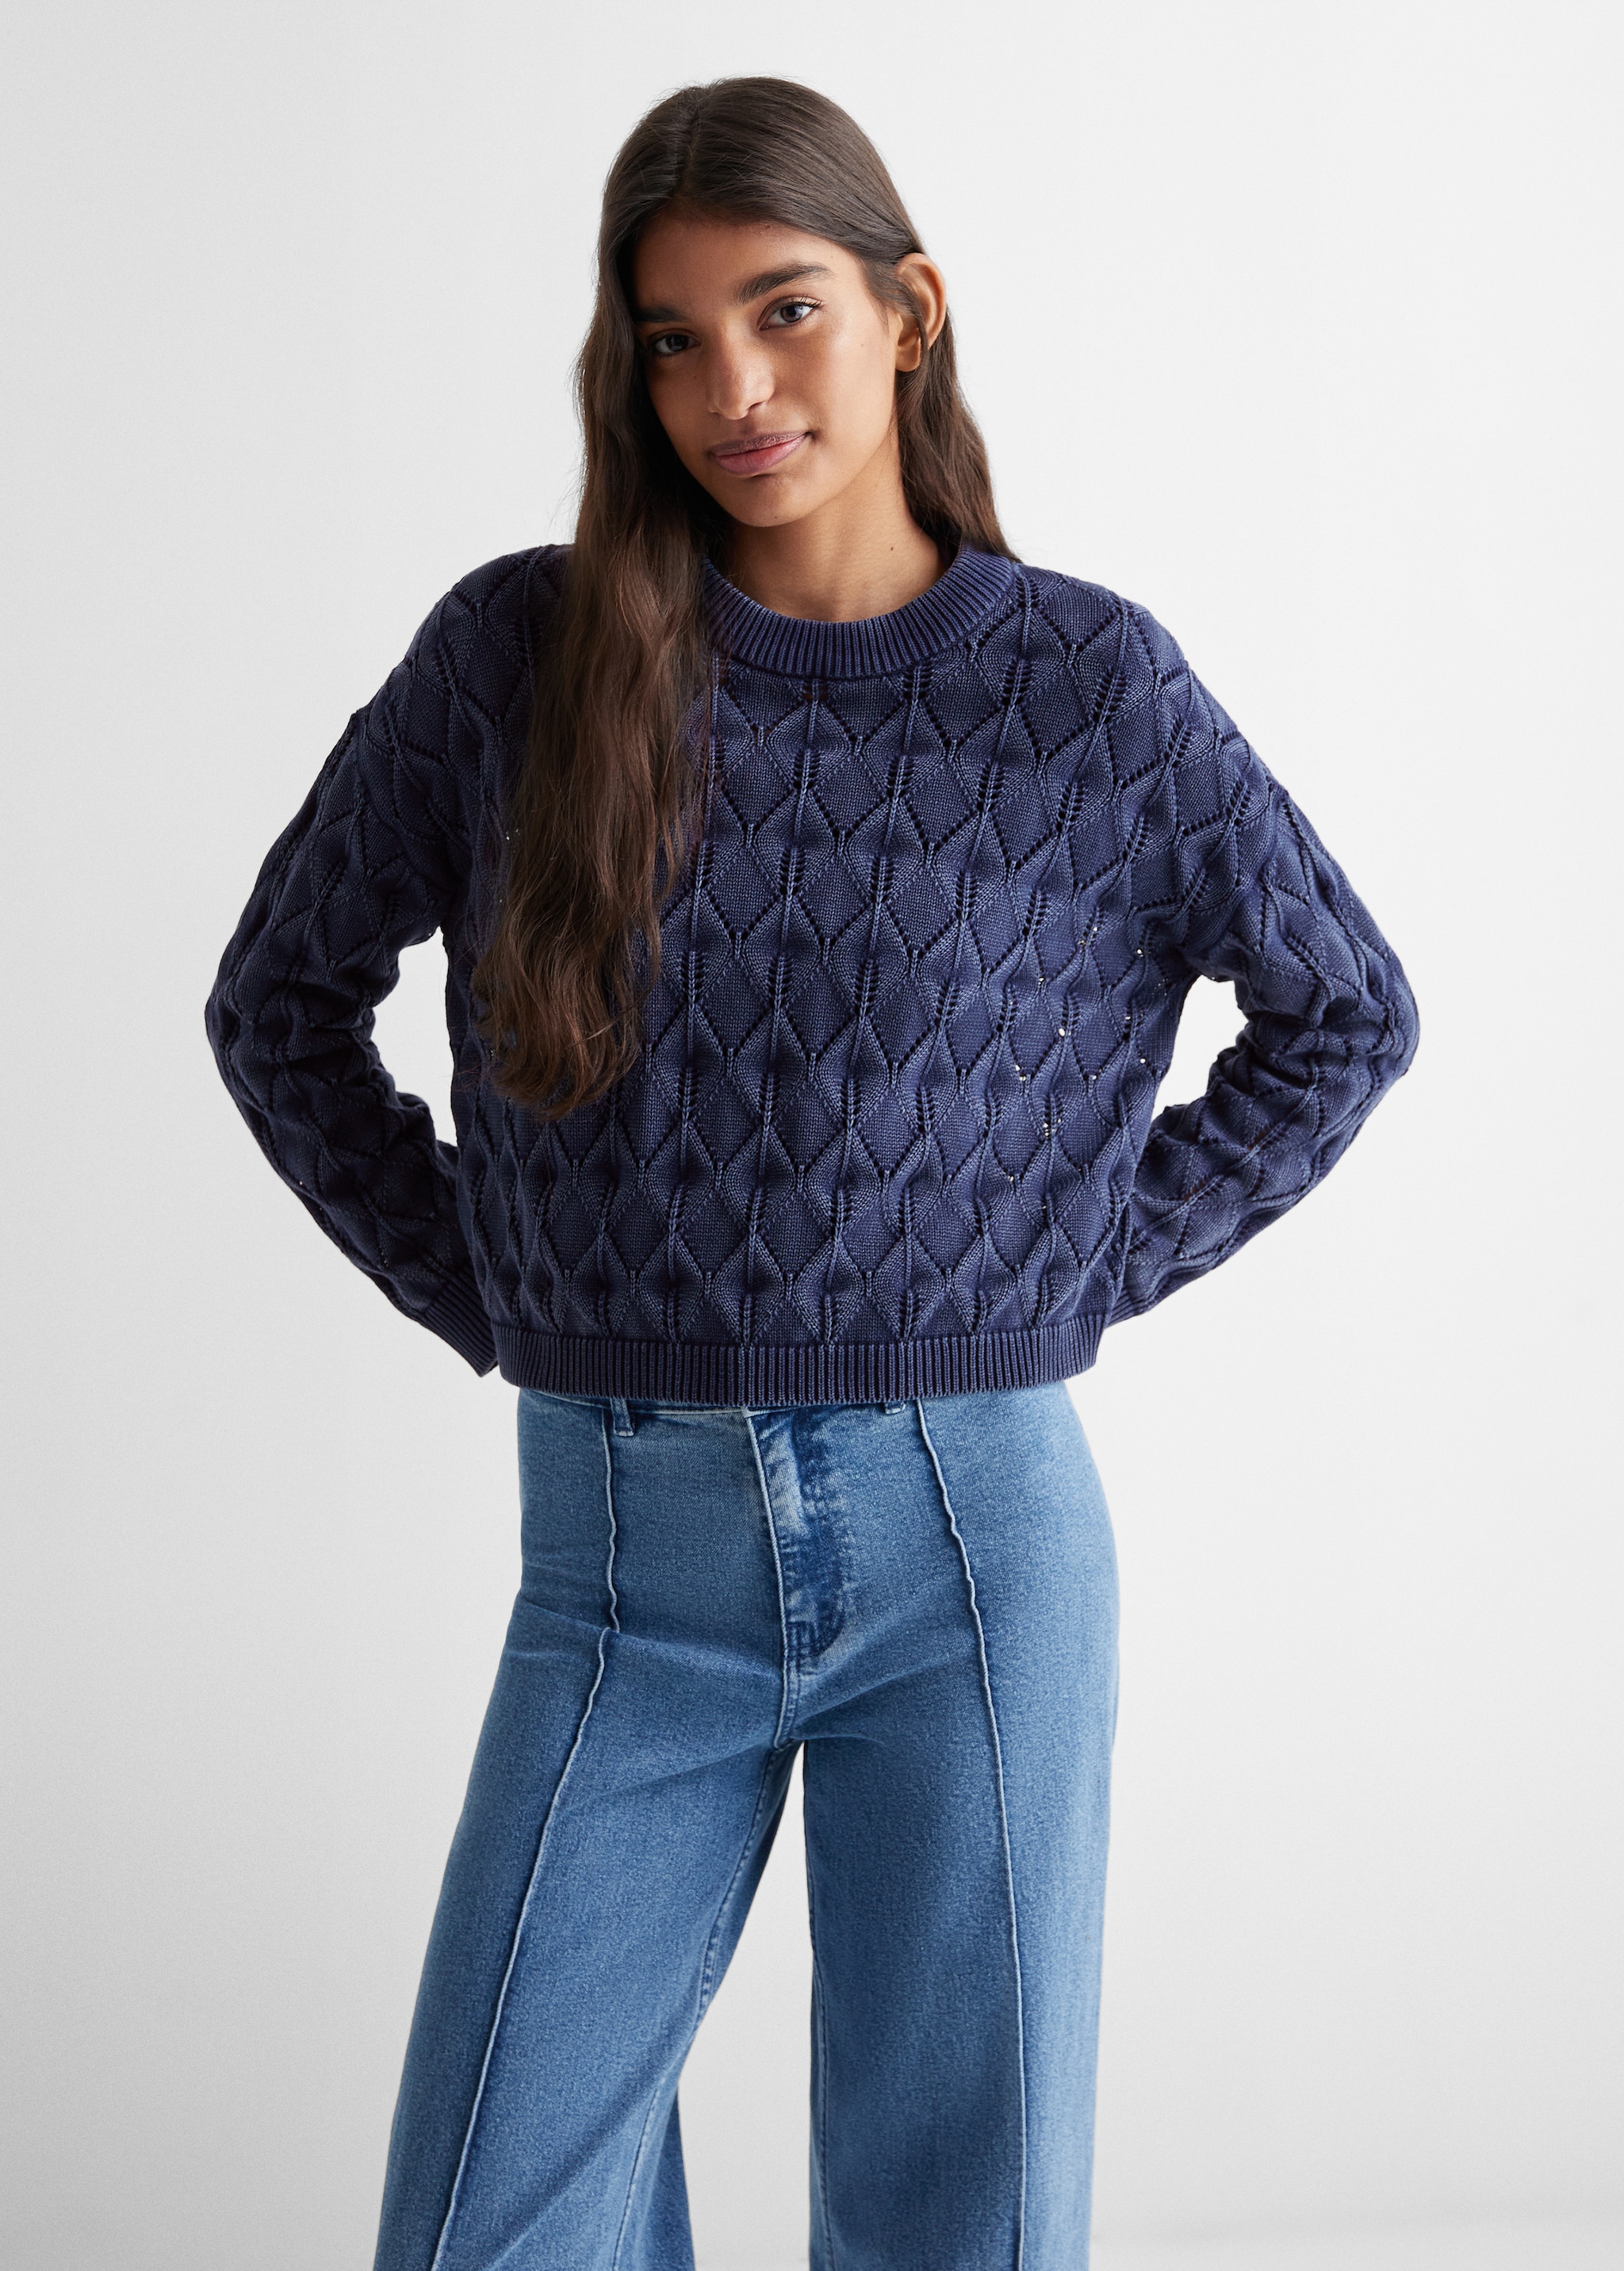 Openwork knit sweater - Medium plane